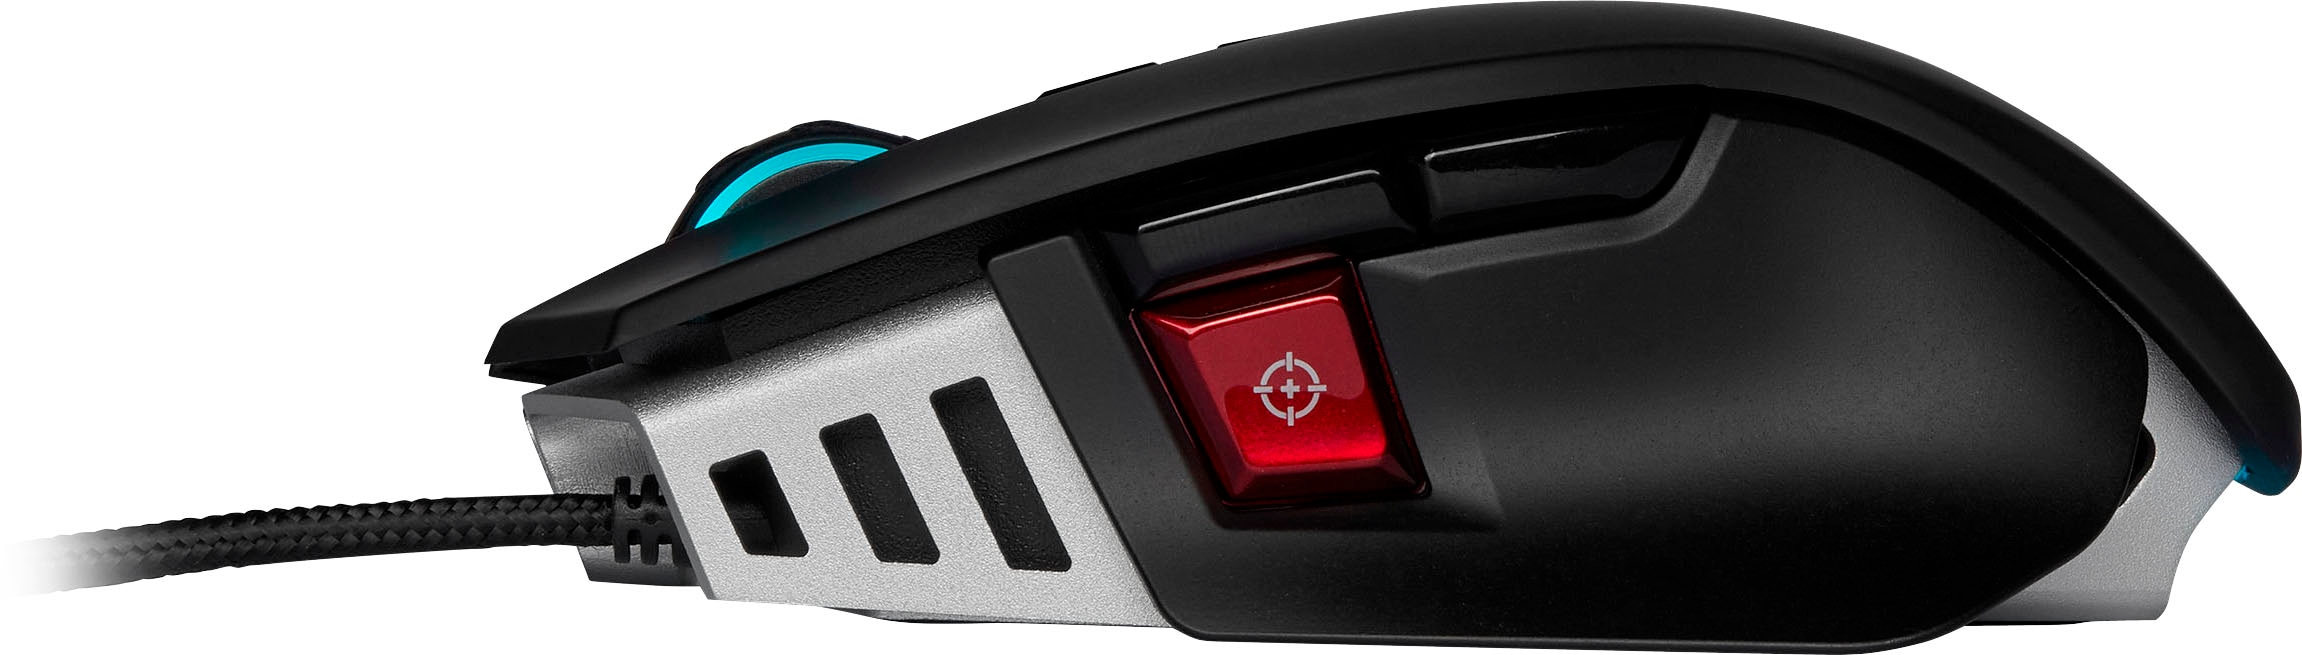 Corsair Gaming-Maus »M65 RGB ELITE Gaming Mouse«, kabelgebunden